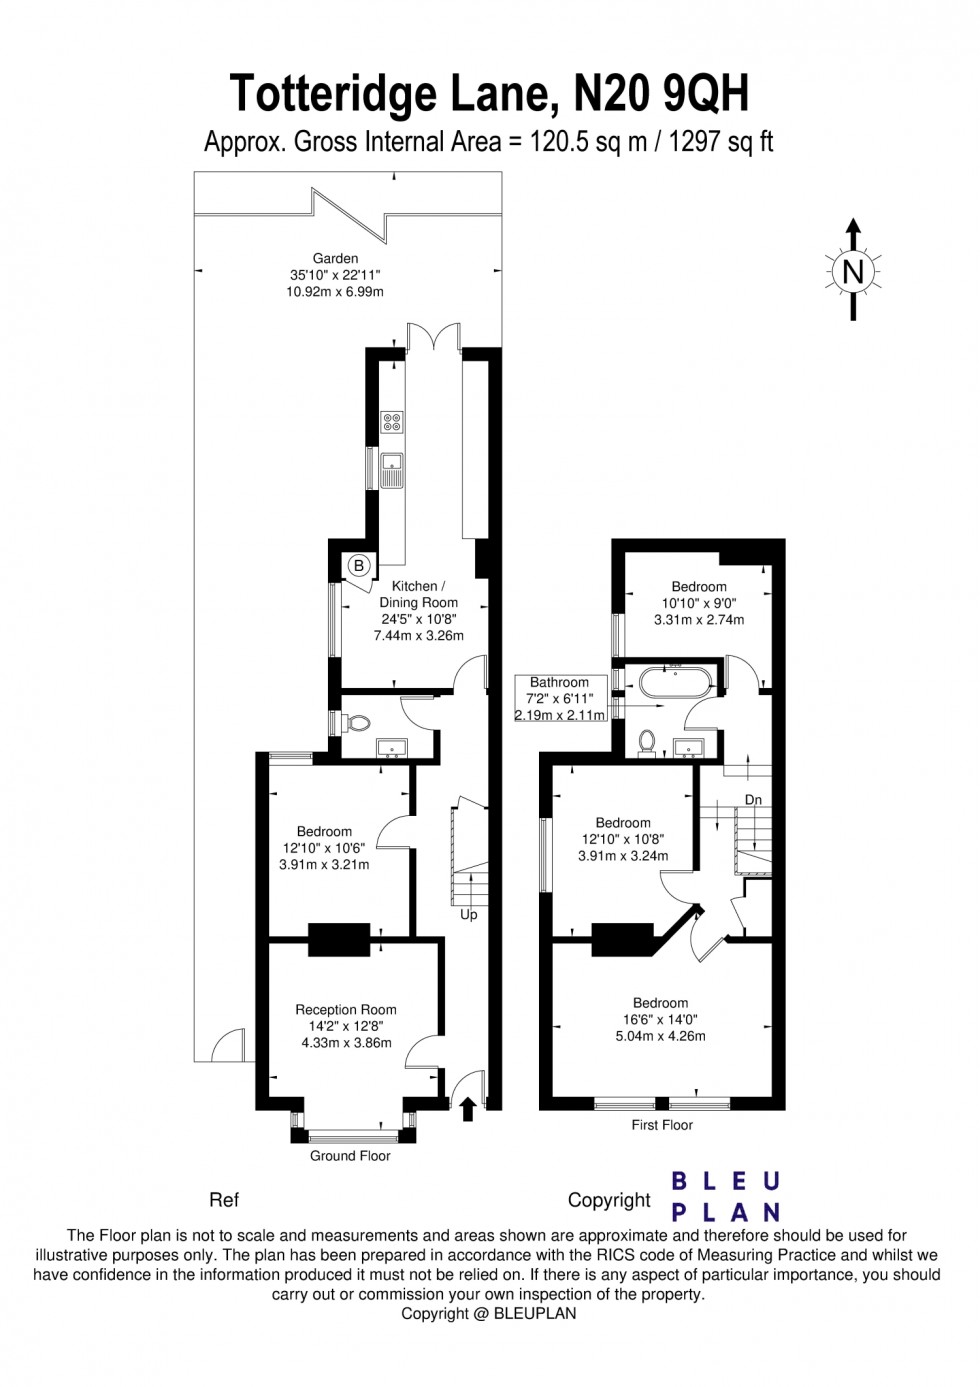 Floorplan for Totteridge Lane, N20